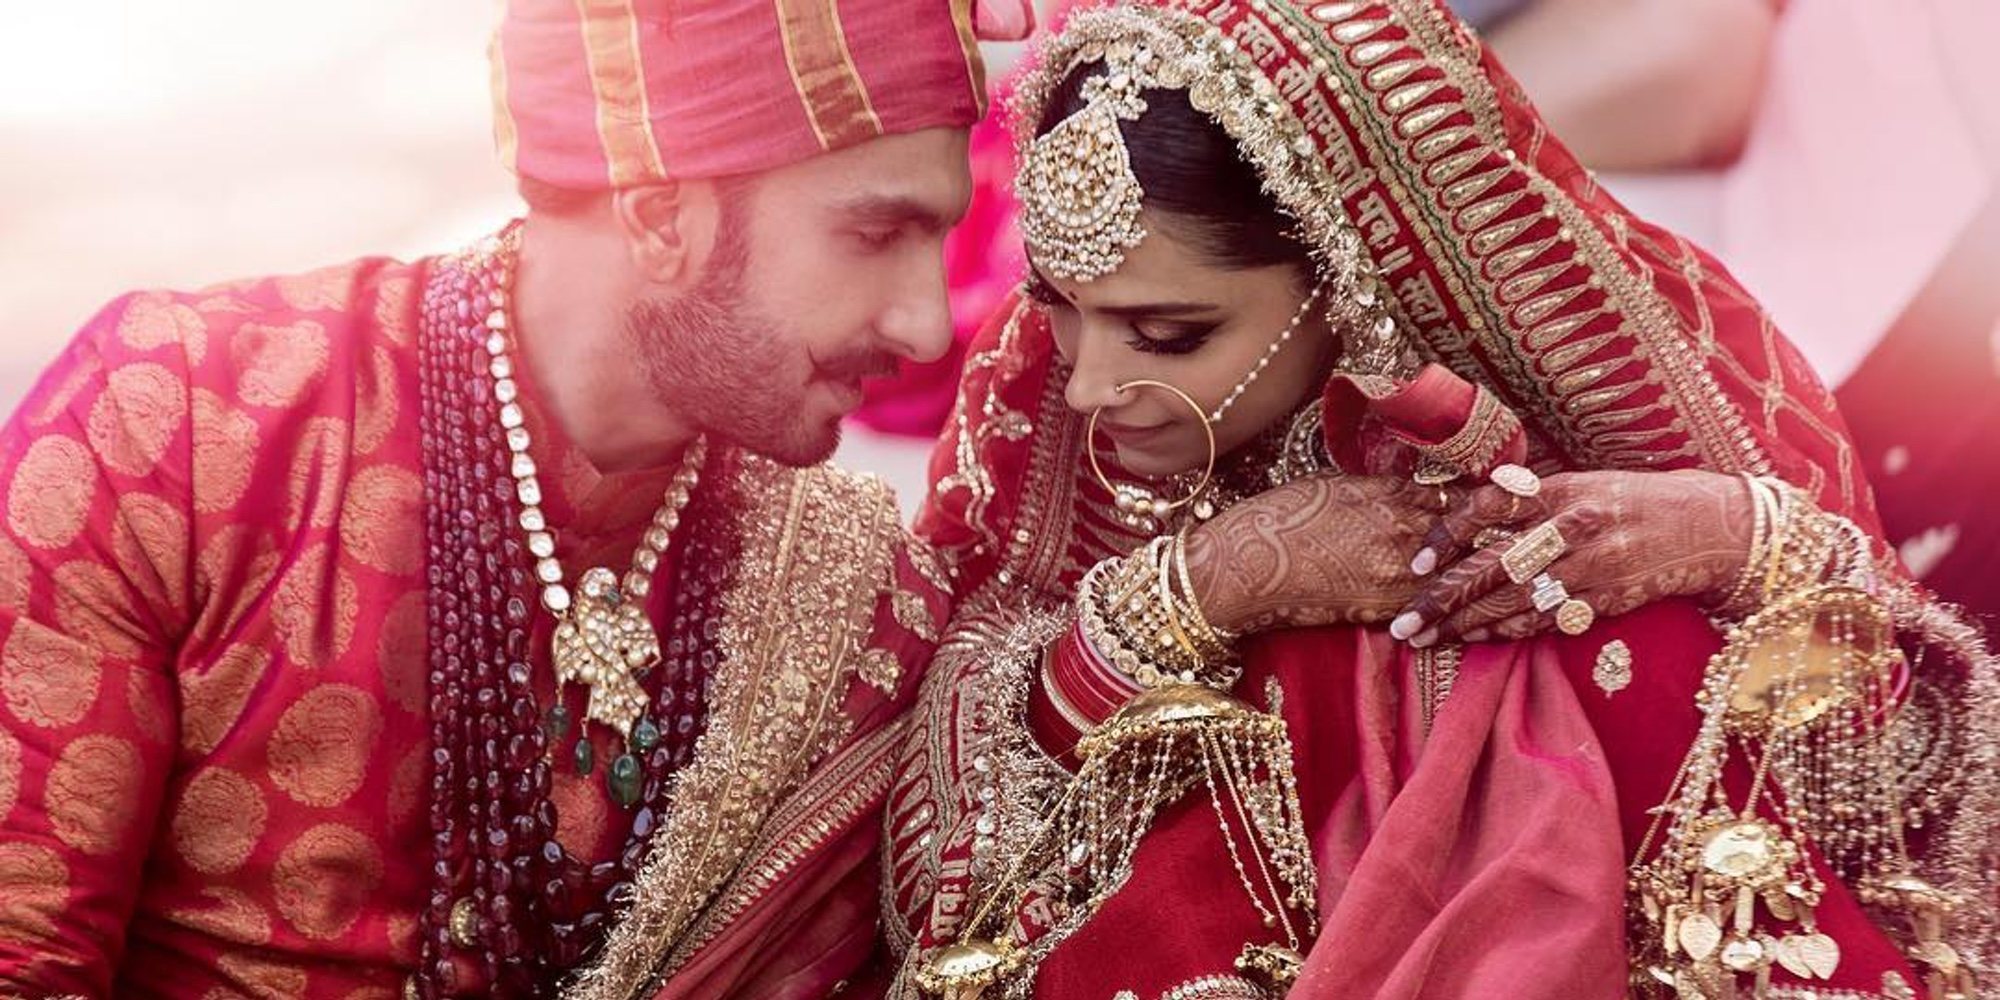 Los actores de Bollywood Deepika Padukone y Ranveer Singh se casan tras 6 años de relación